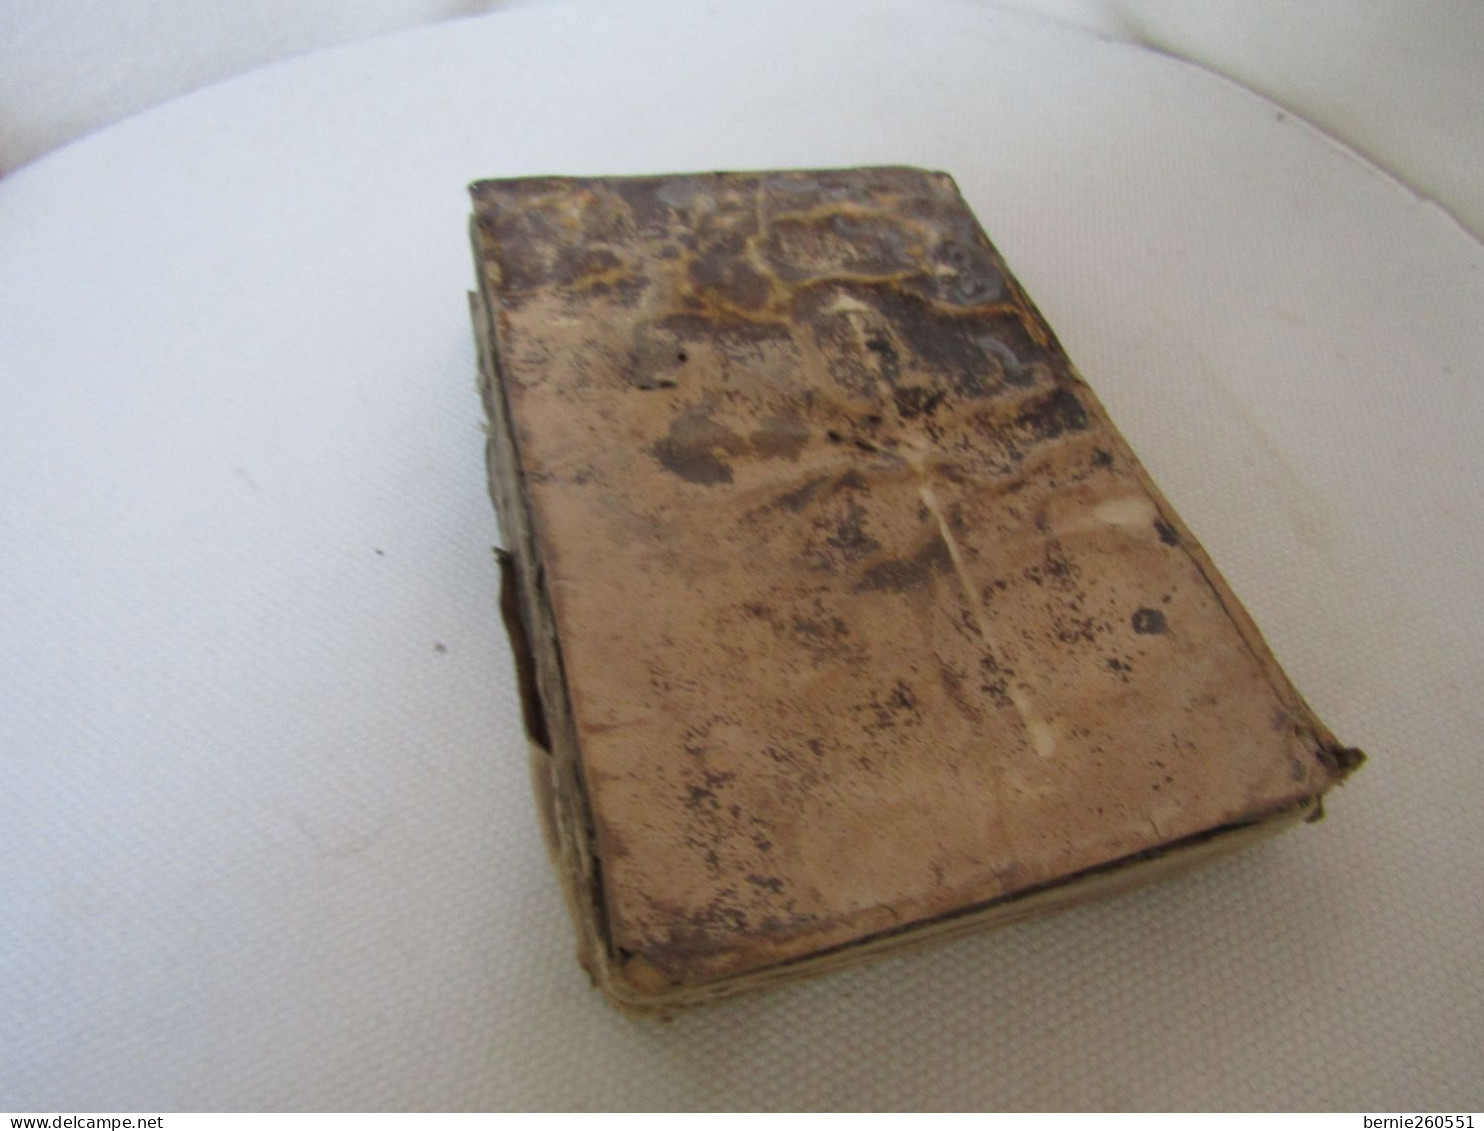 Antique Livre Moeder Godts De 1629, Vieux Flamand - Antiquariat